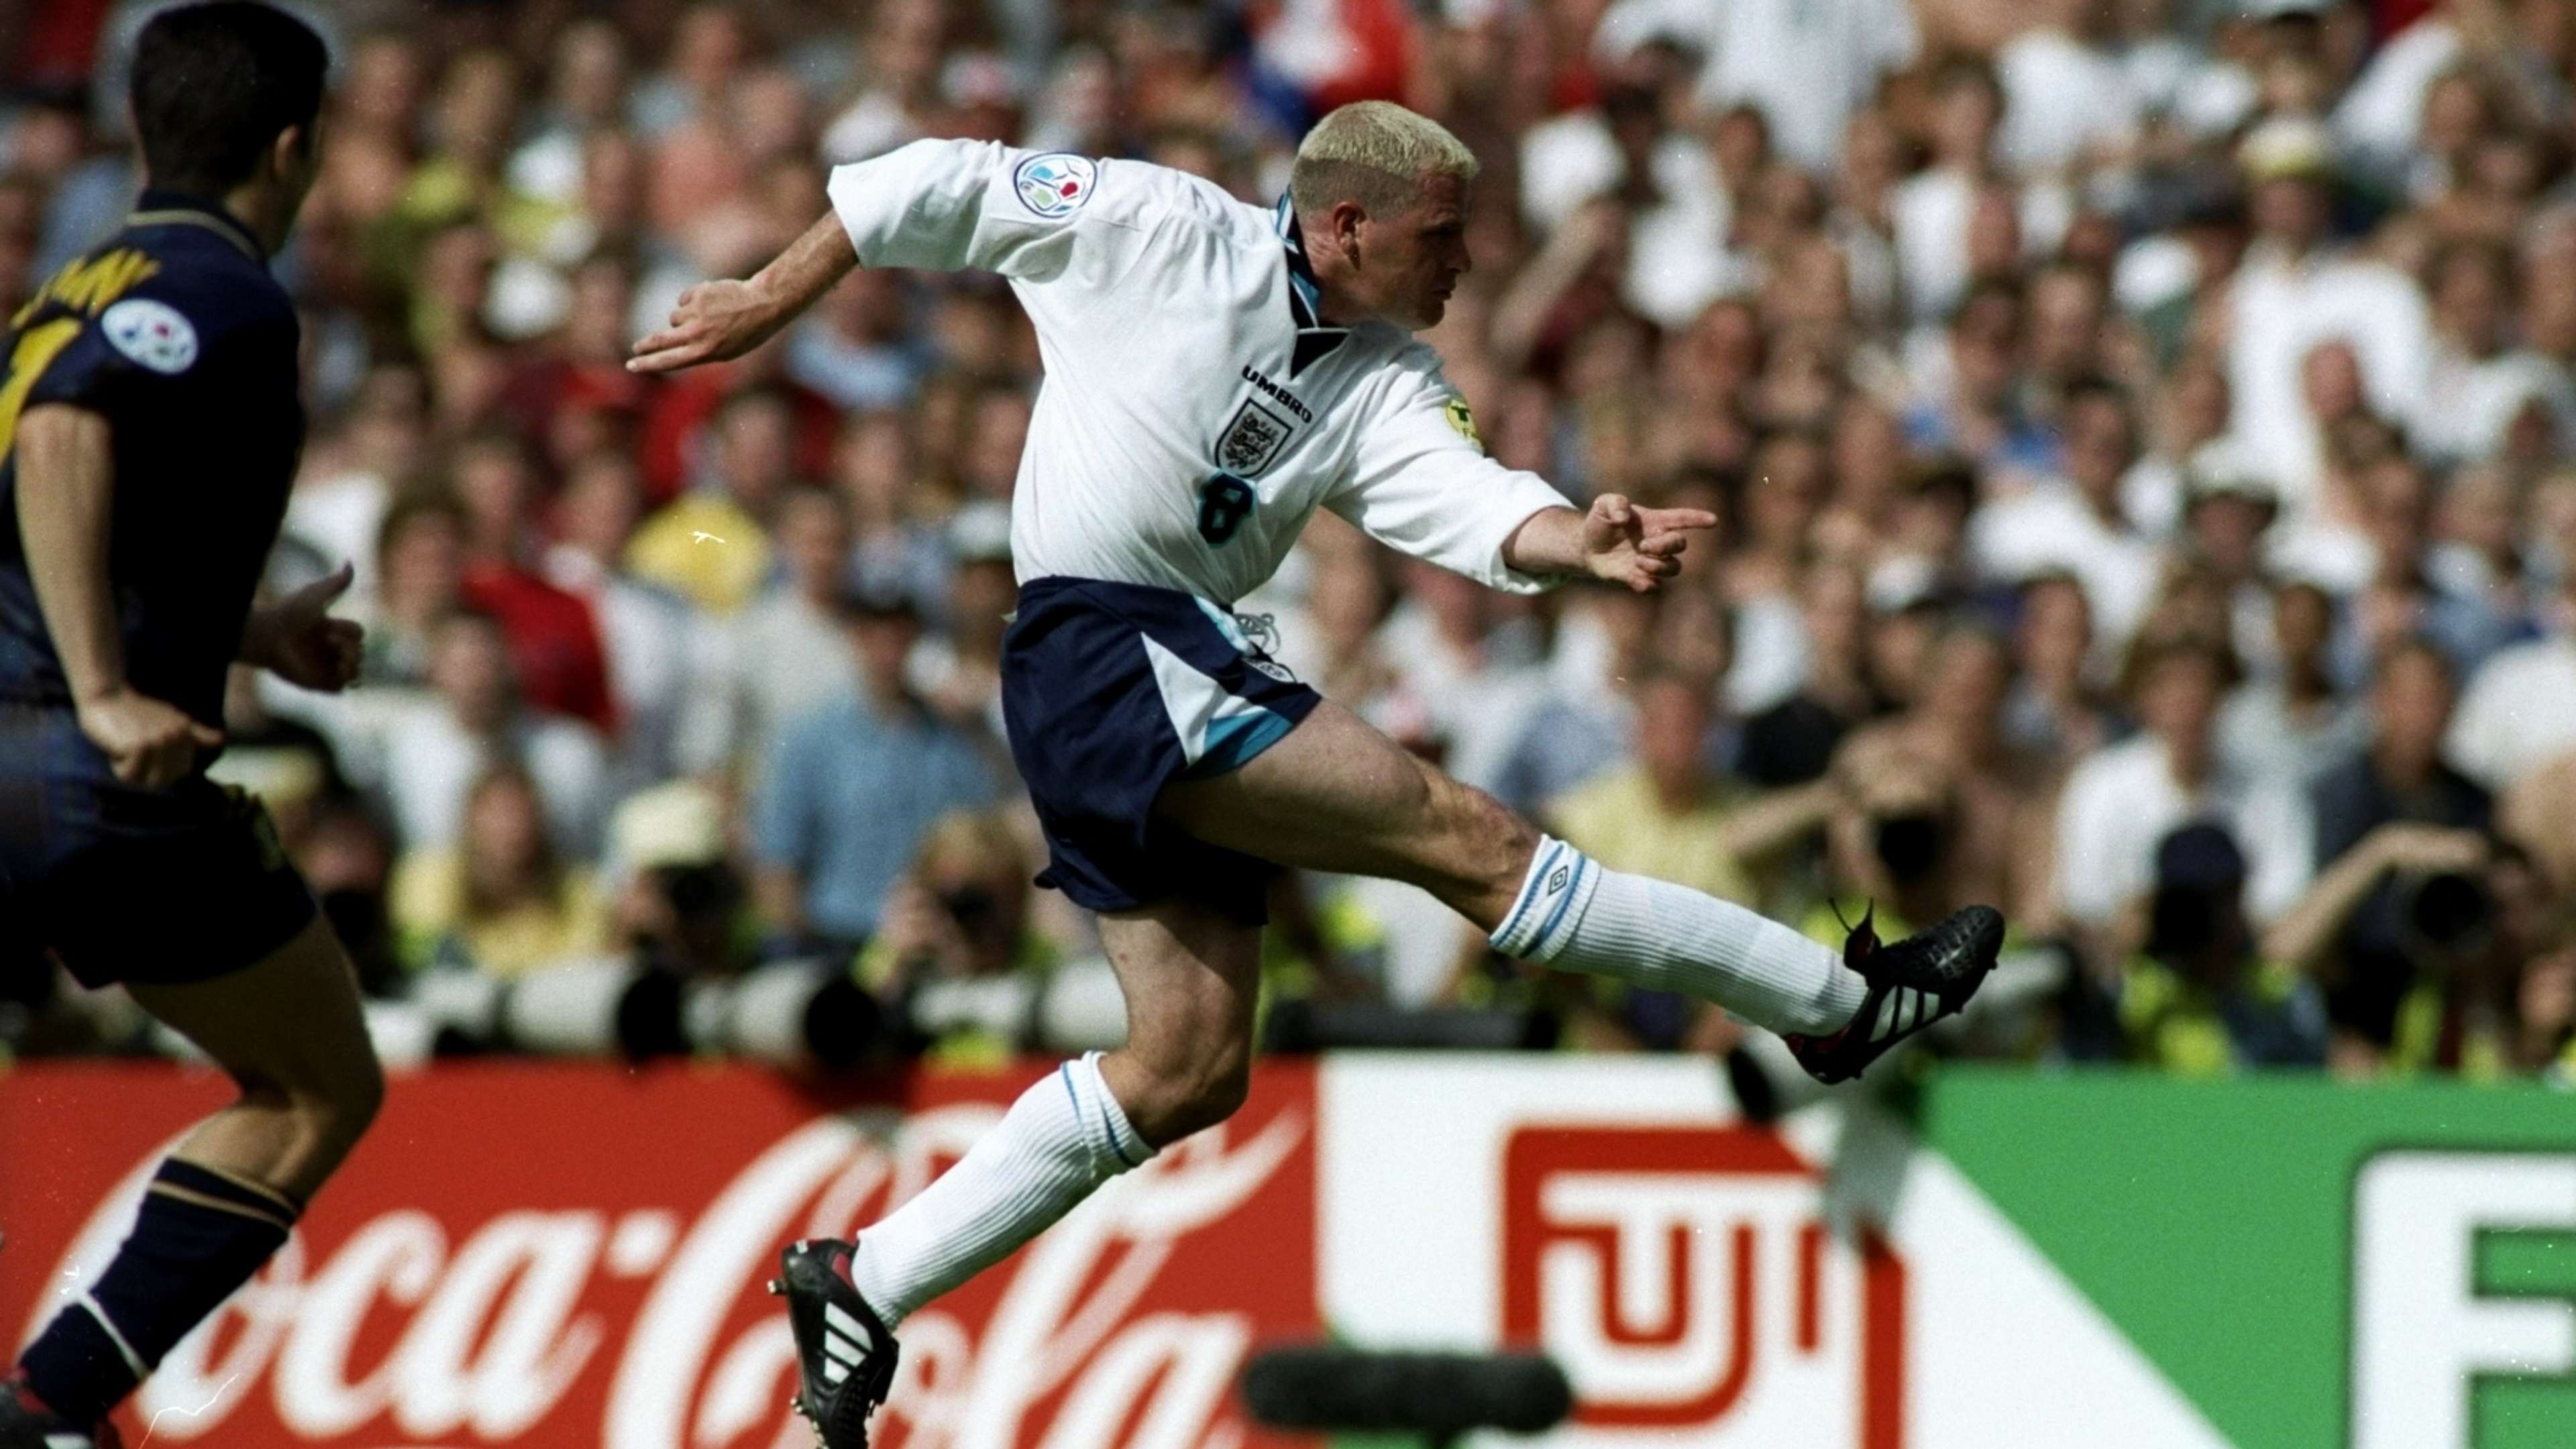 Paul Gascoigne, England vs Scotland 1996